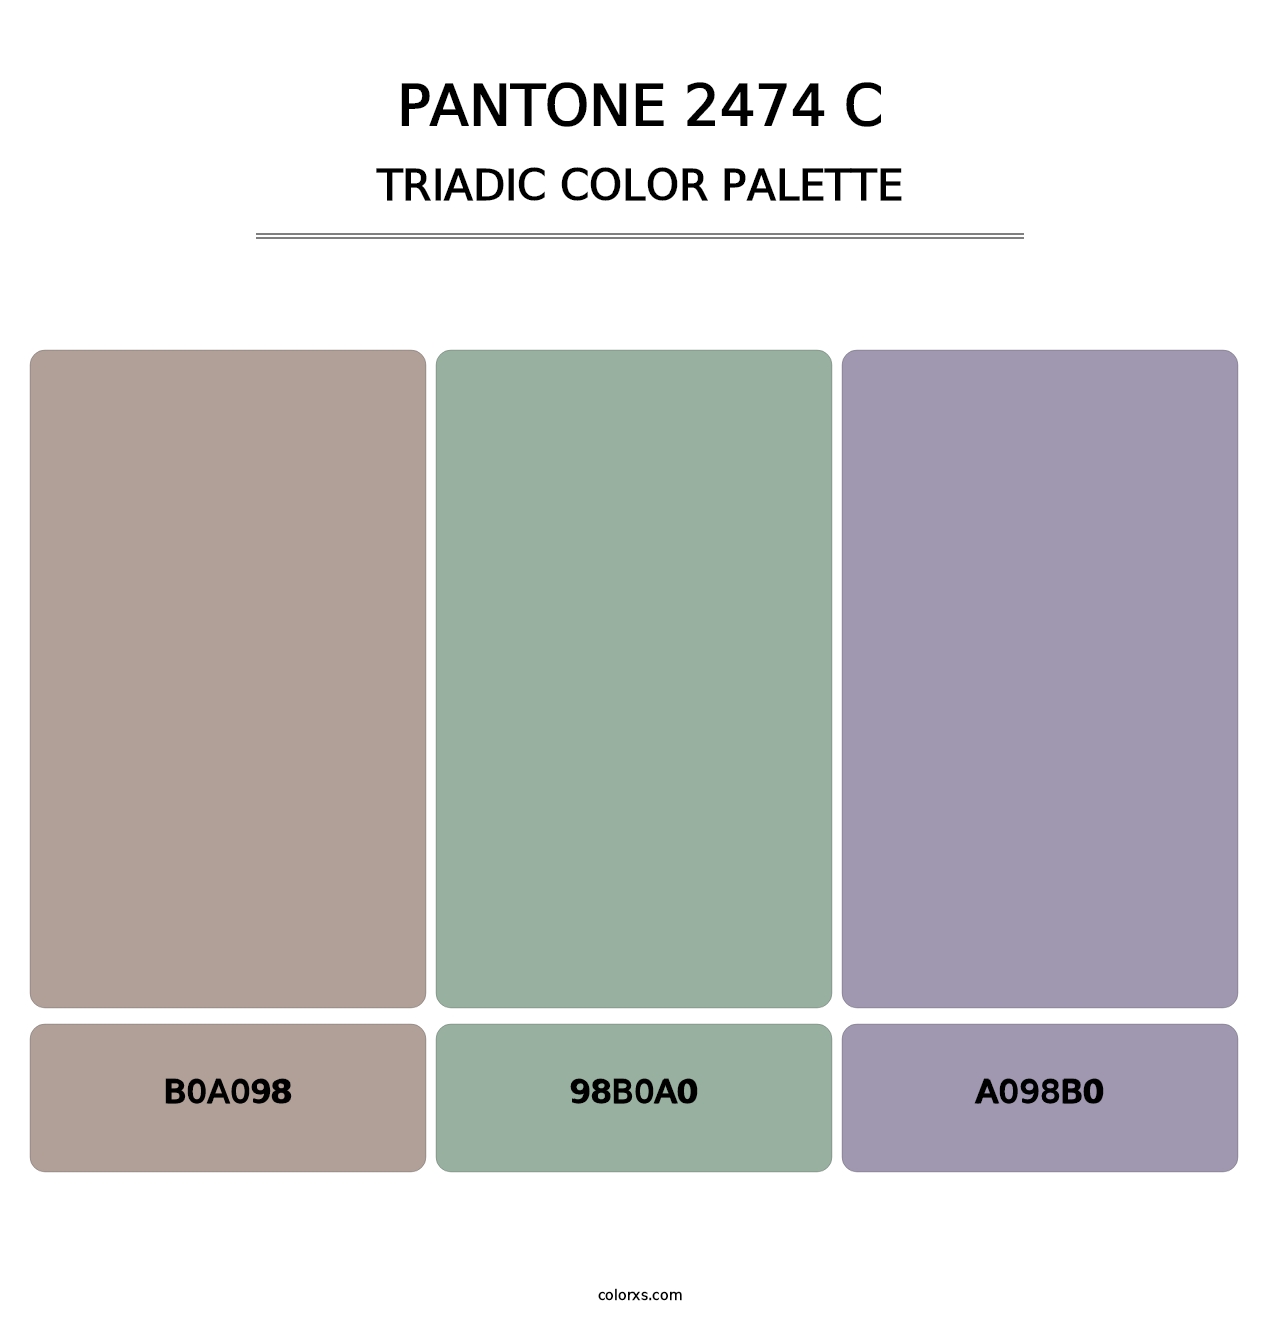 PANTONE 2474 C - Triadic Color Palette